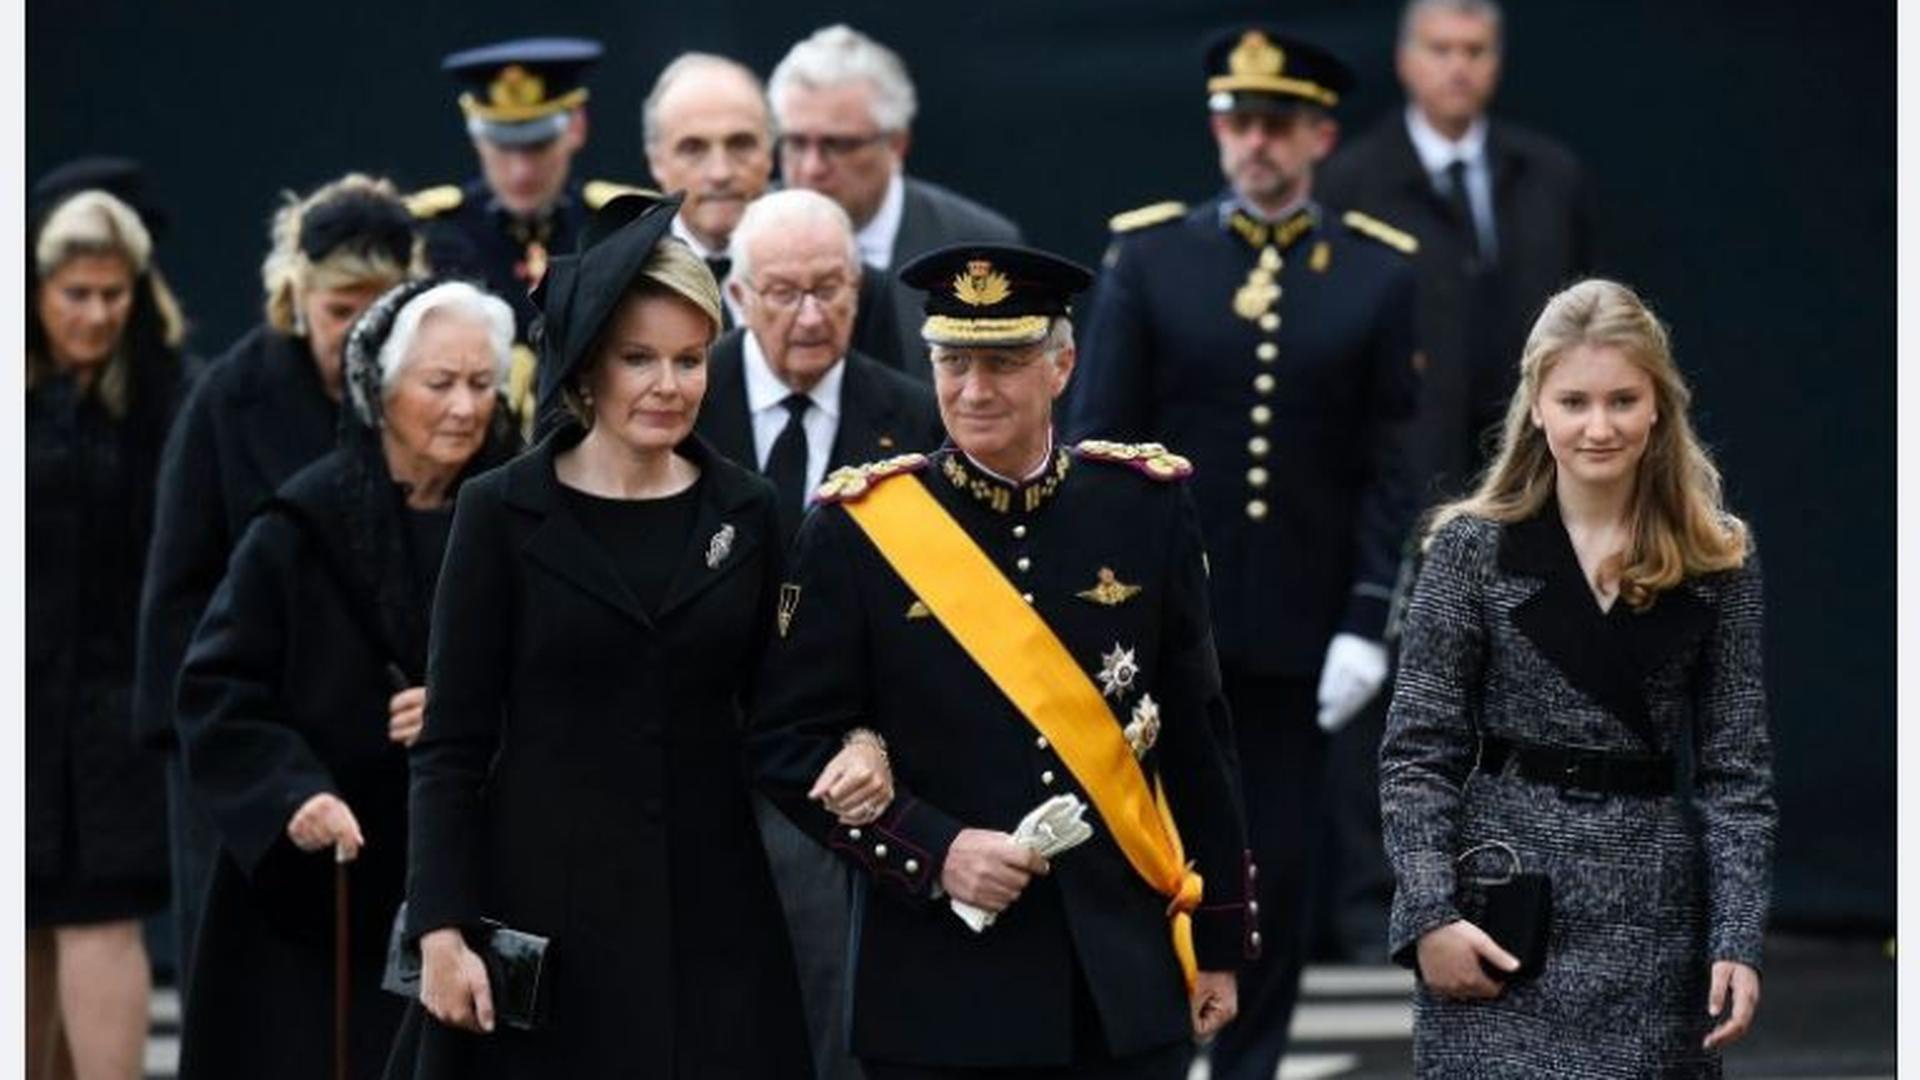 Celle qui est présentée comme la future reine de Belgique, ici à droite, avait assisté aux obsèques du Grand-Duc Jean en mai 2019.